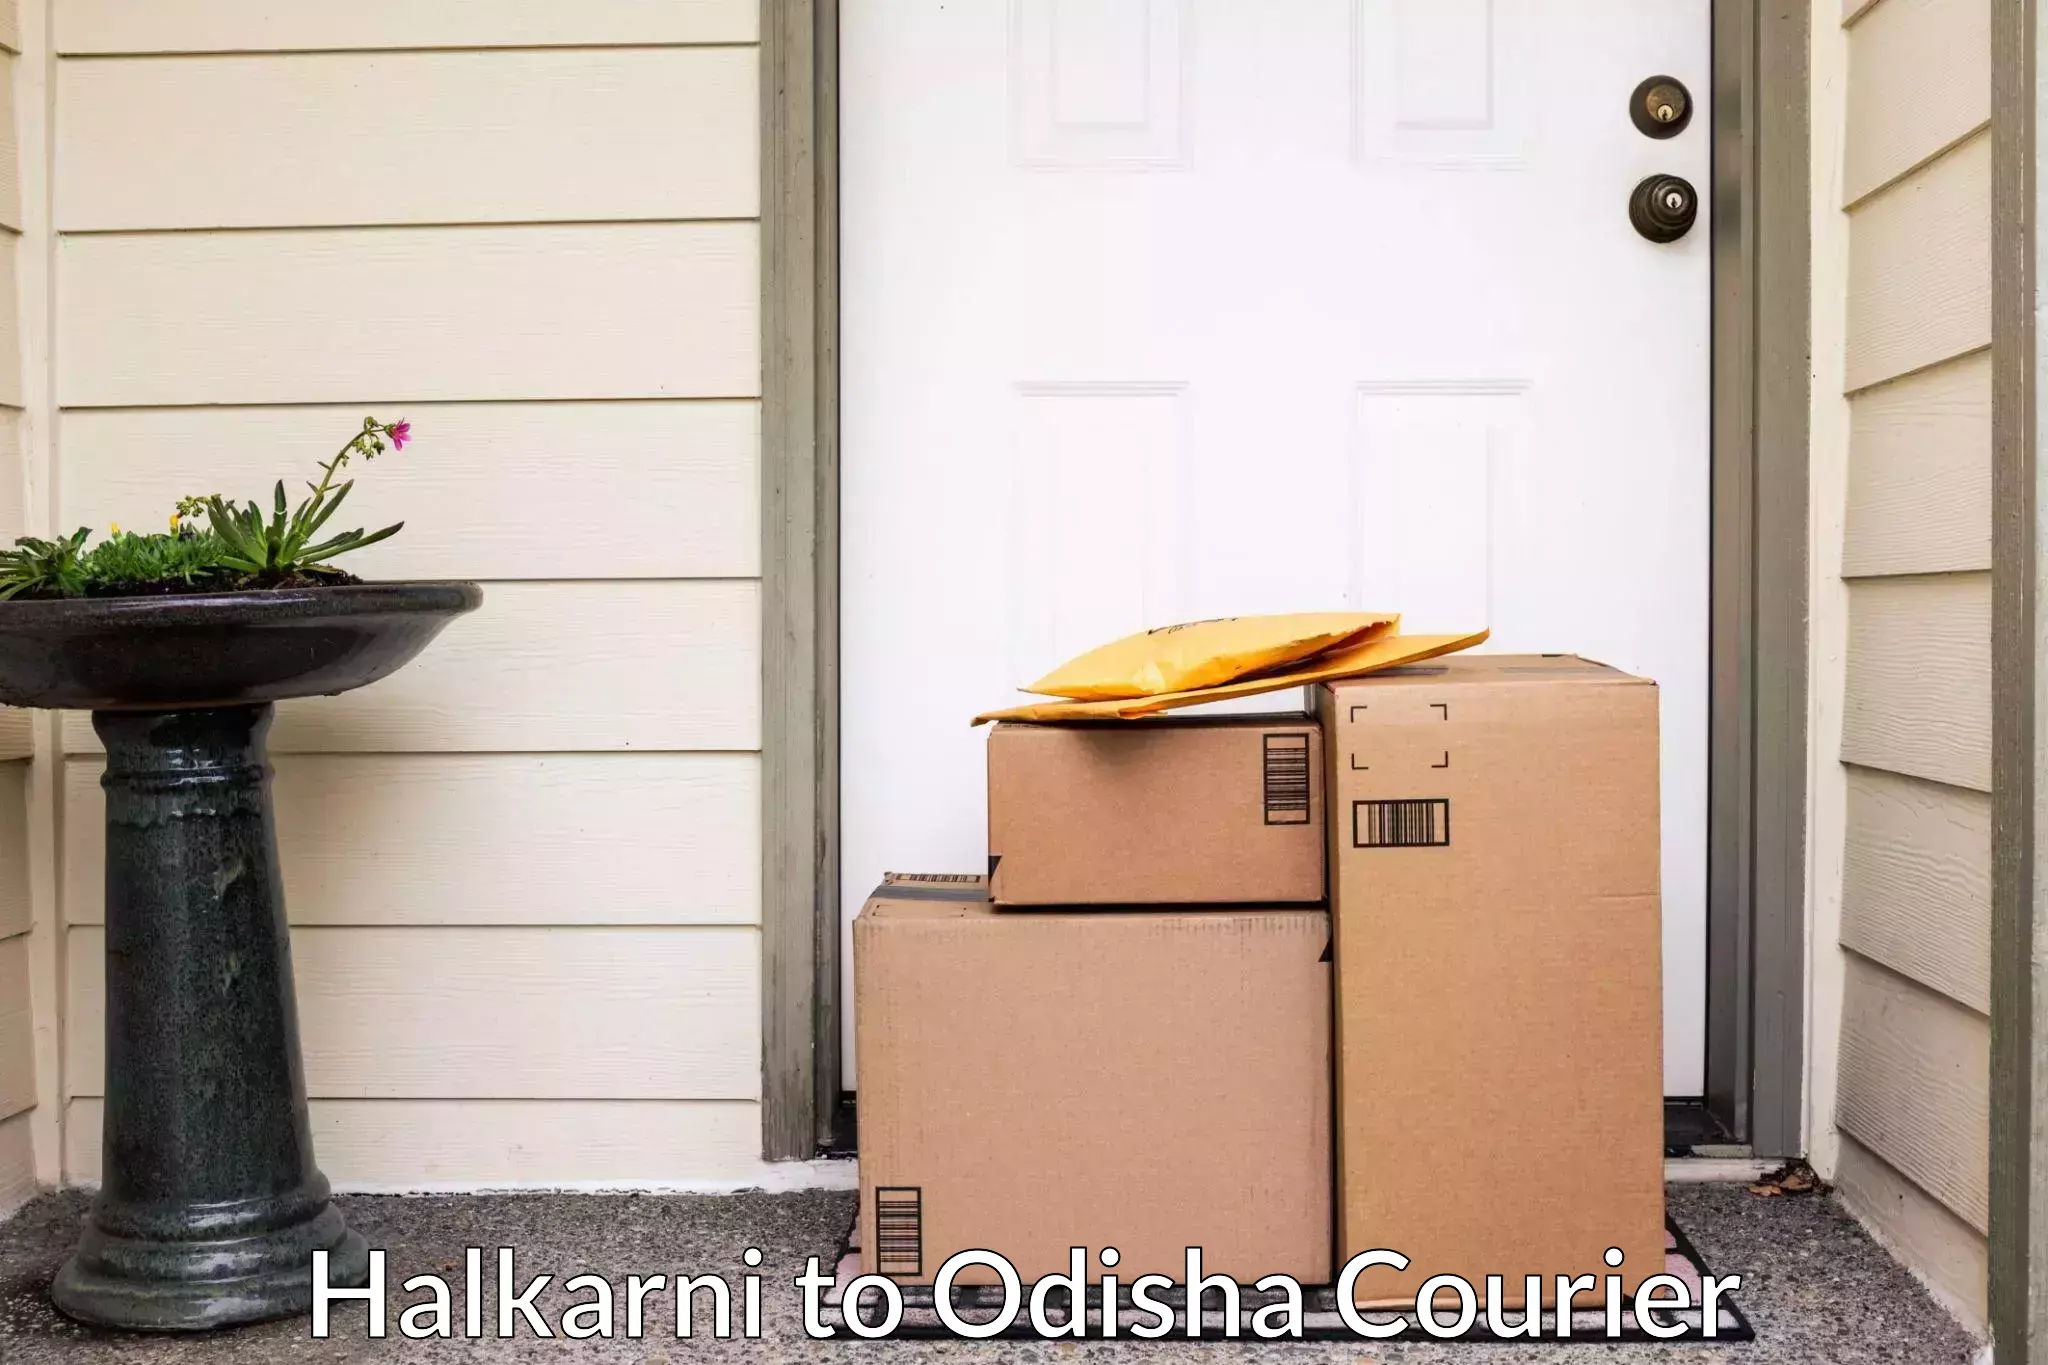 Reliable moving assistance Halkarni to Raighar